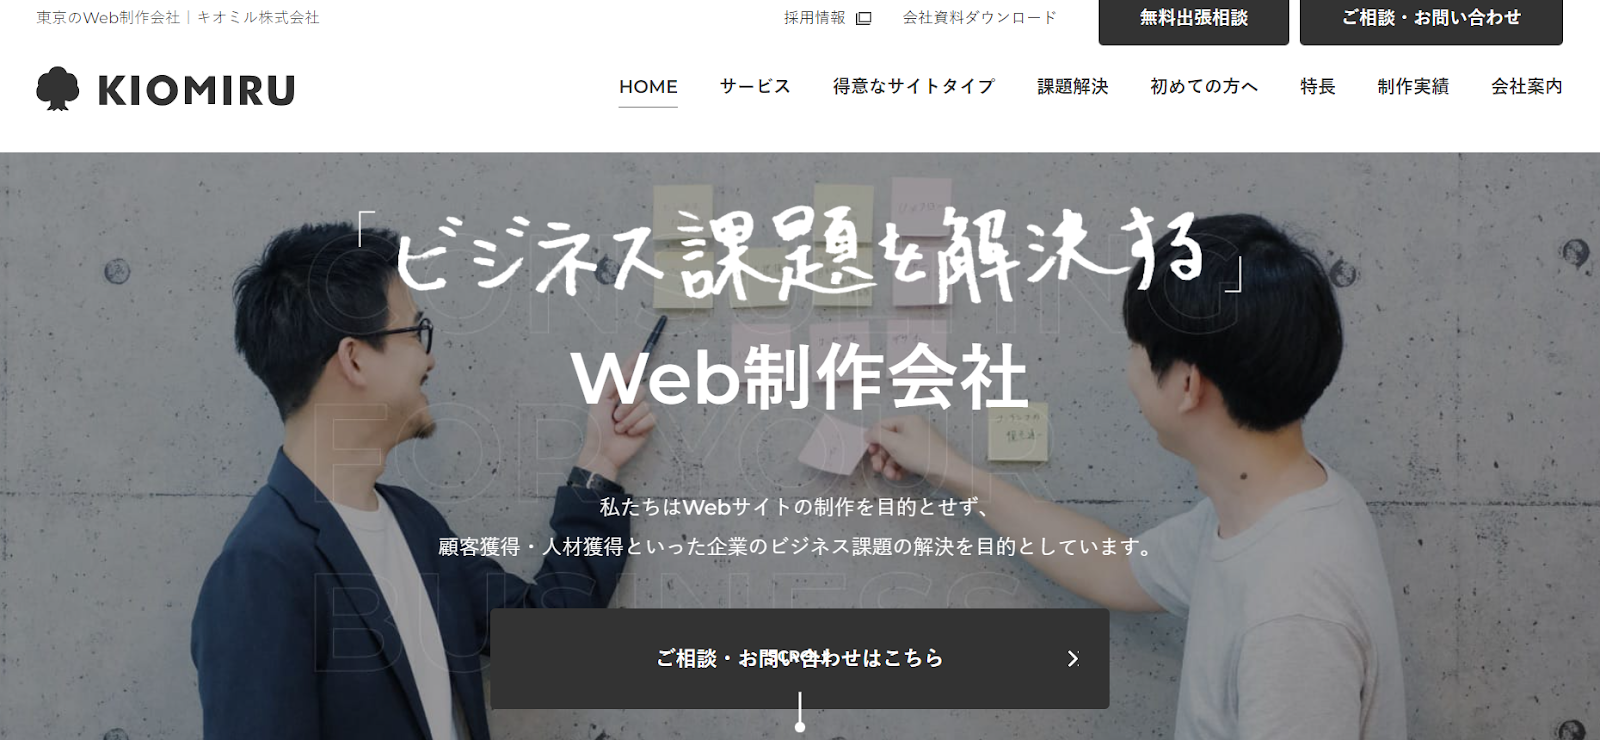 中小企業のWeb制作をサポート「キオミル株式会社」